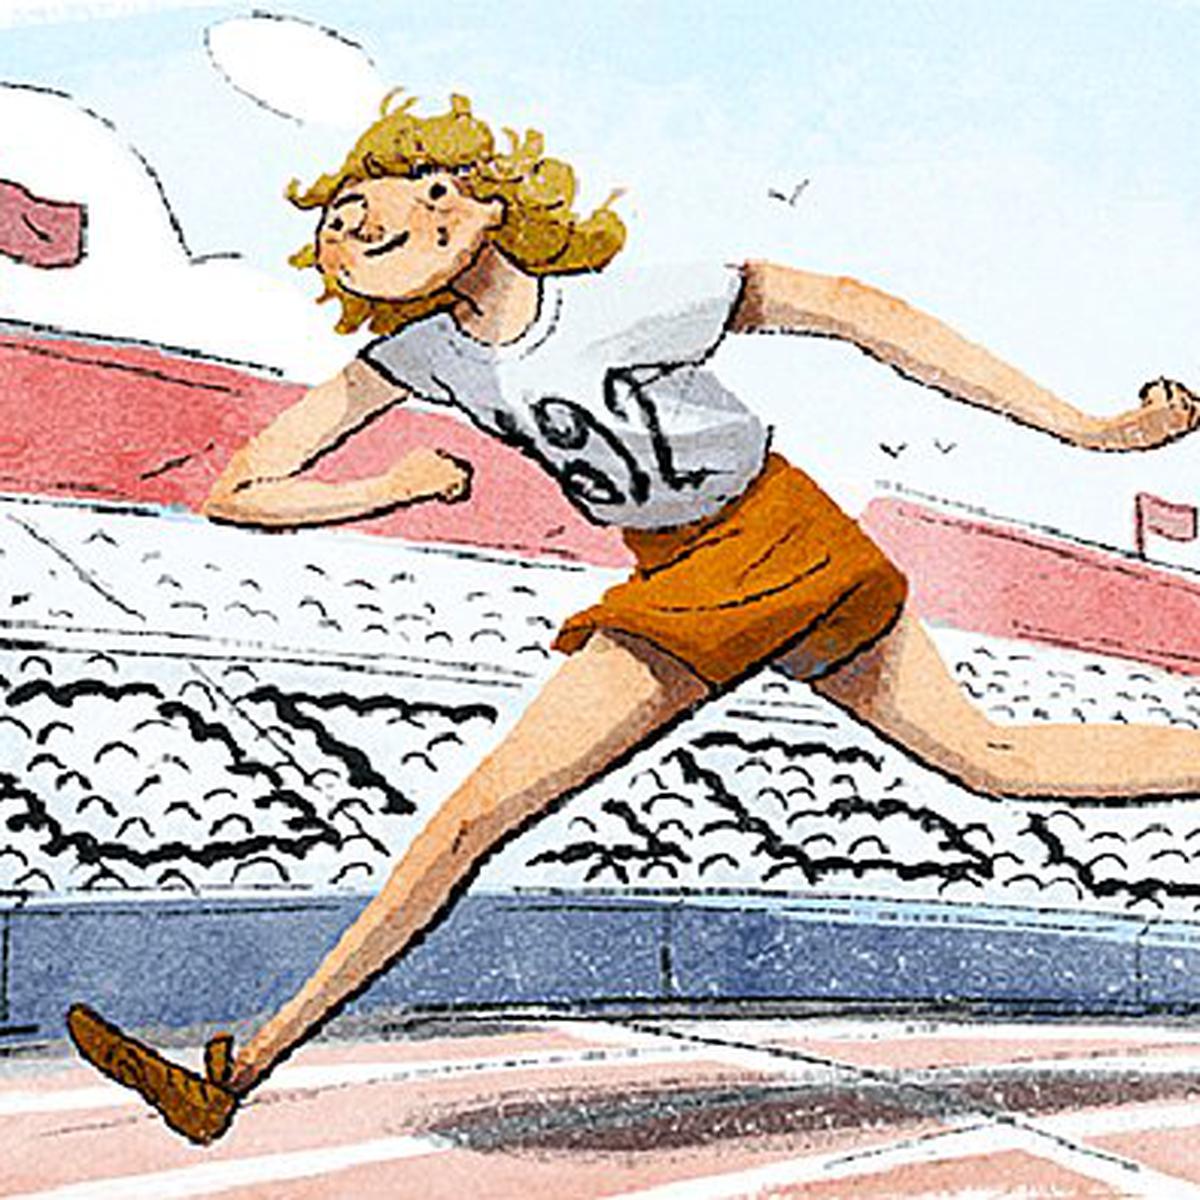 Salto em altura é tema de Doodle em homenagem às Olimpíadas de Londres